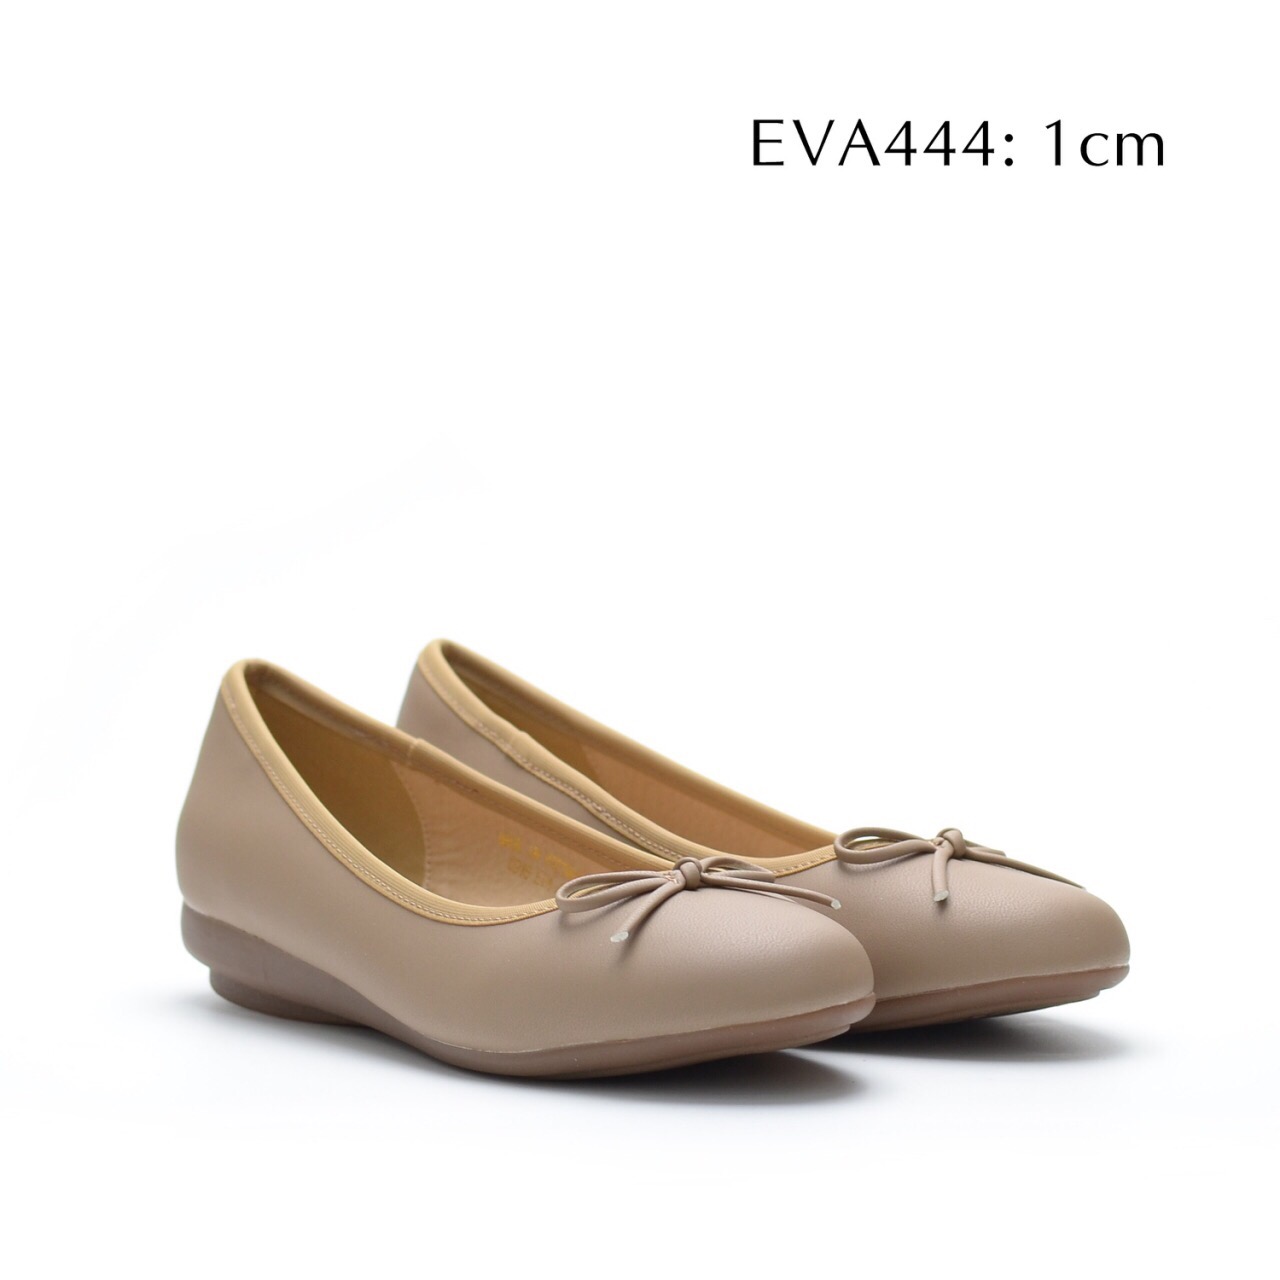 Giày búp bê EVA444 cột nơ nhỏ xinh